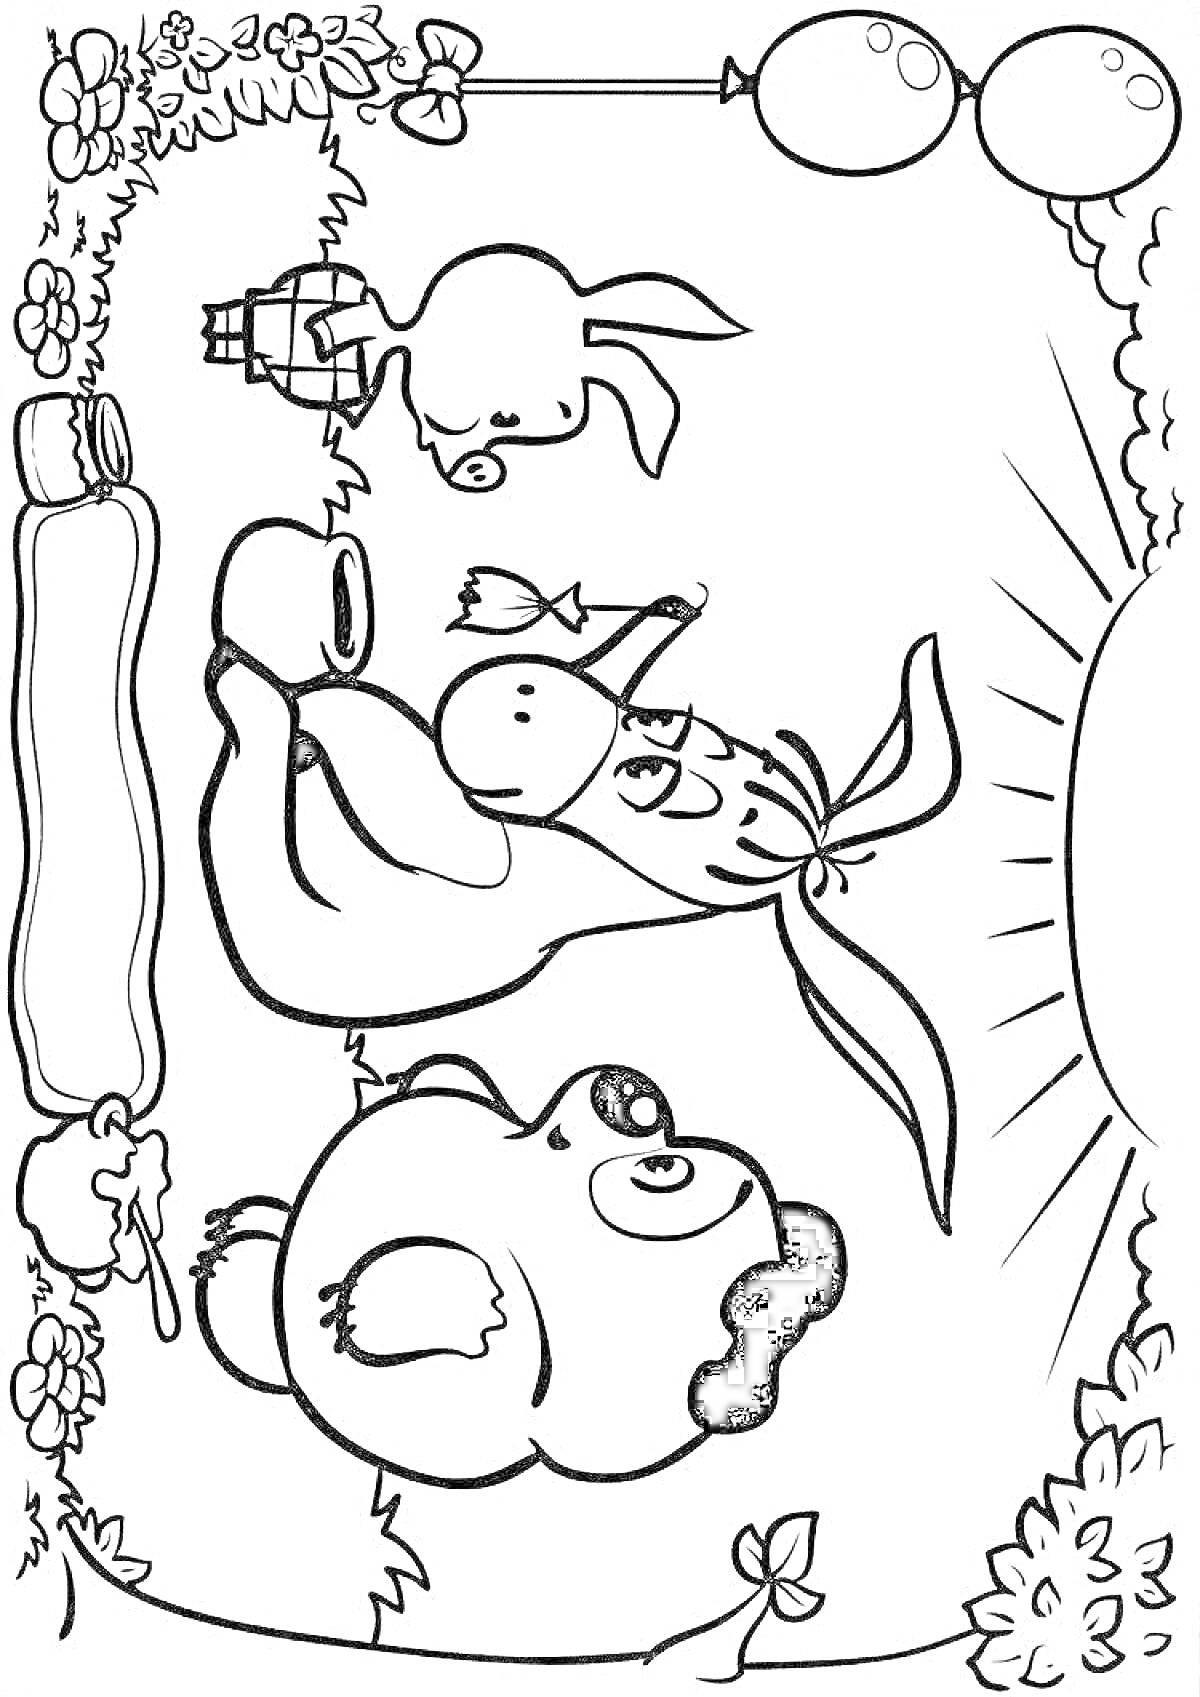 На раскраске изображено: Поросёнок, Кролик, Медвежонок, Цветы, Бабочка, Солнце, Шары, Дорожка, Природа, Из мультфильмов, Для детей